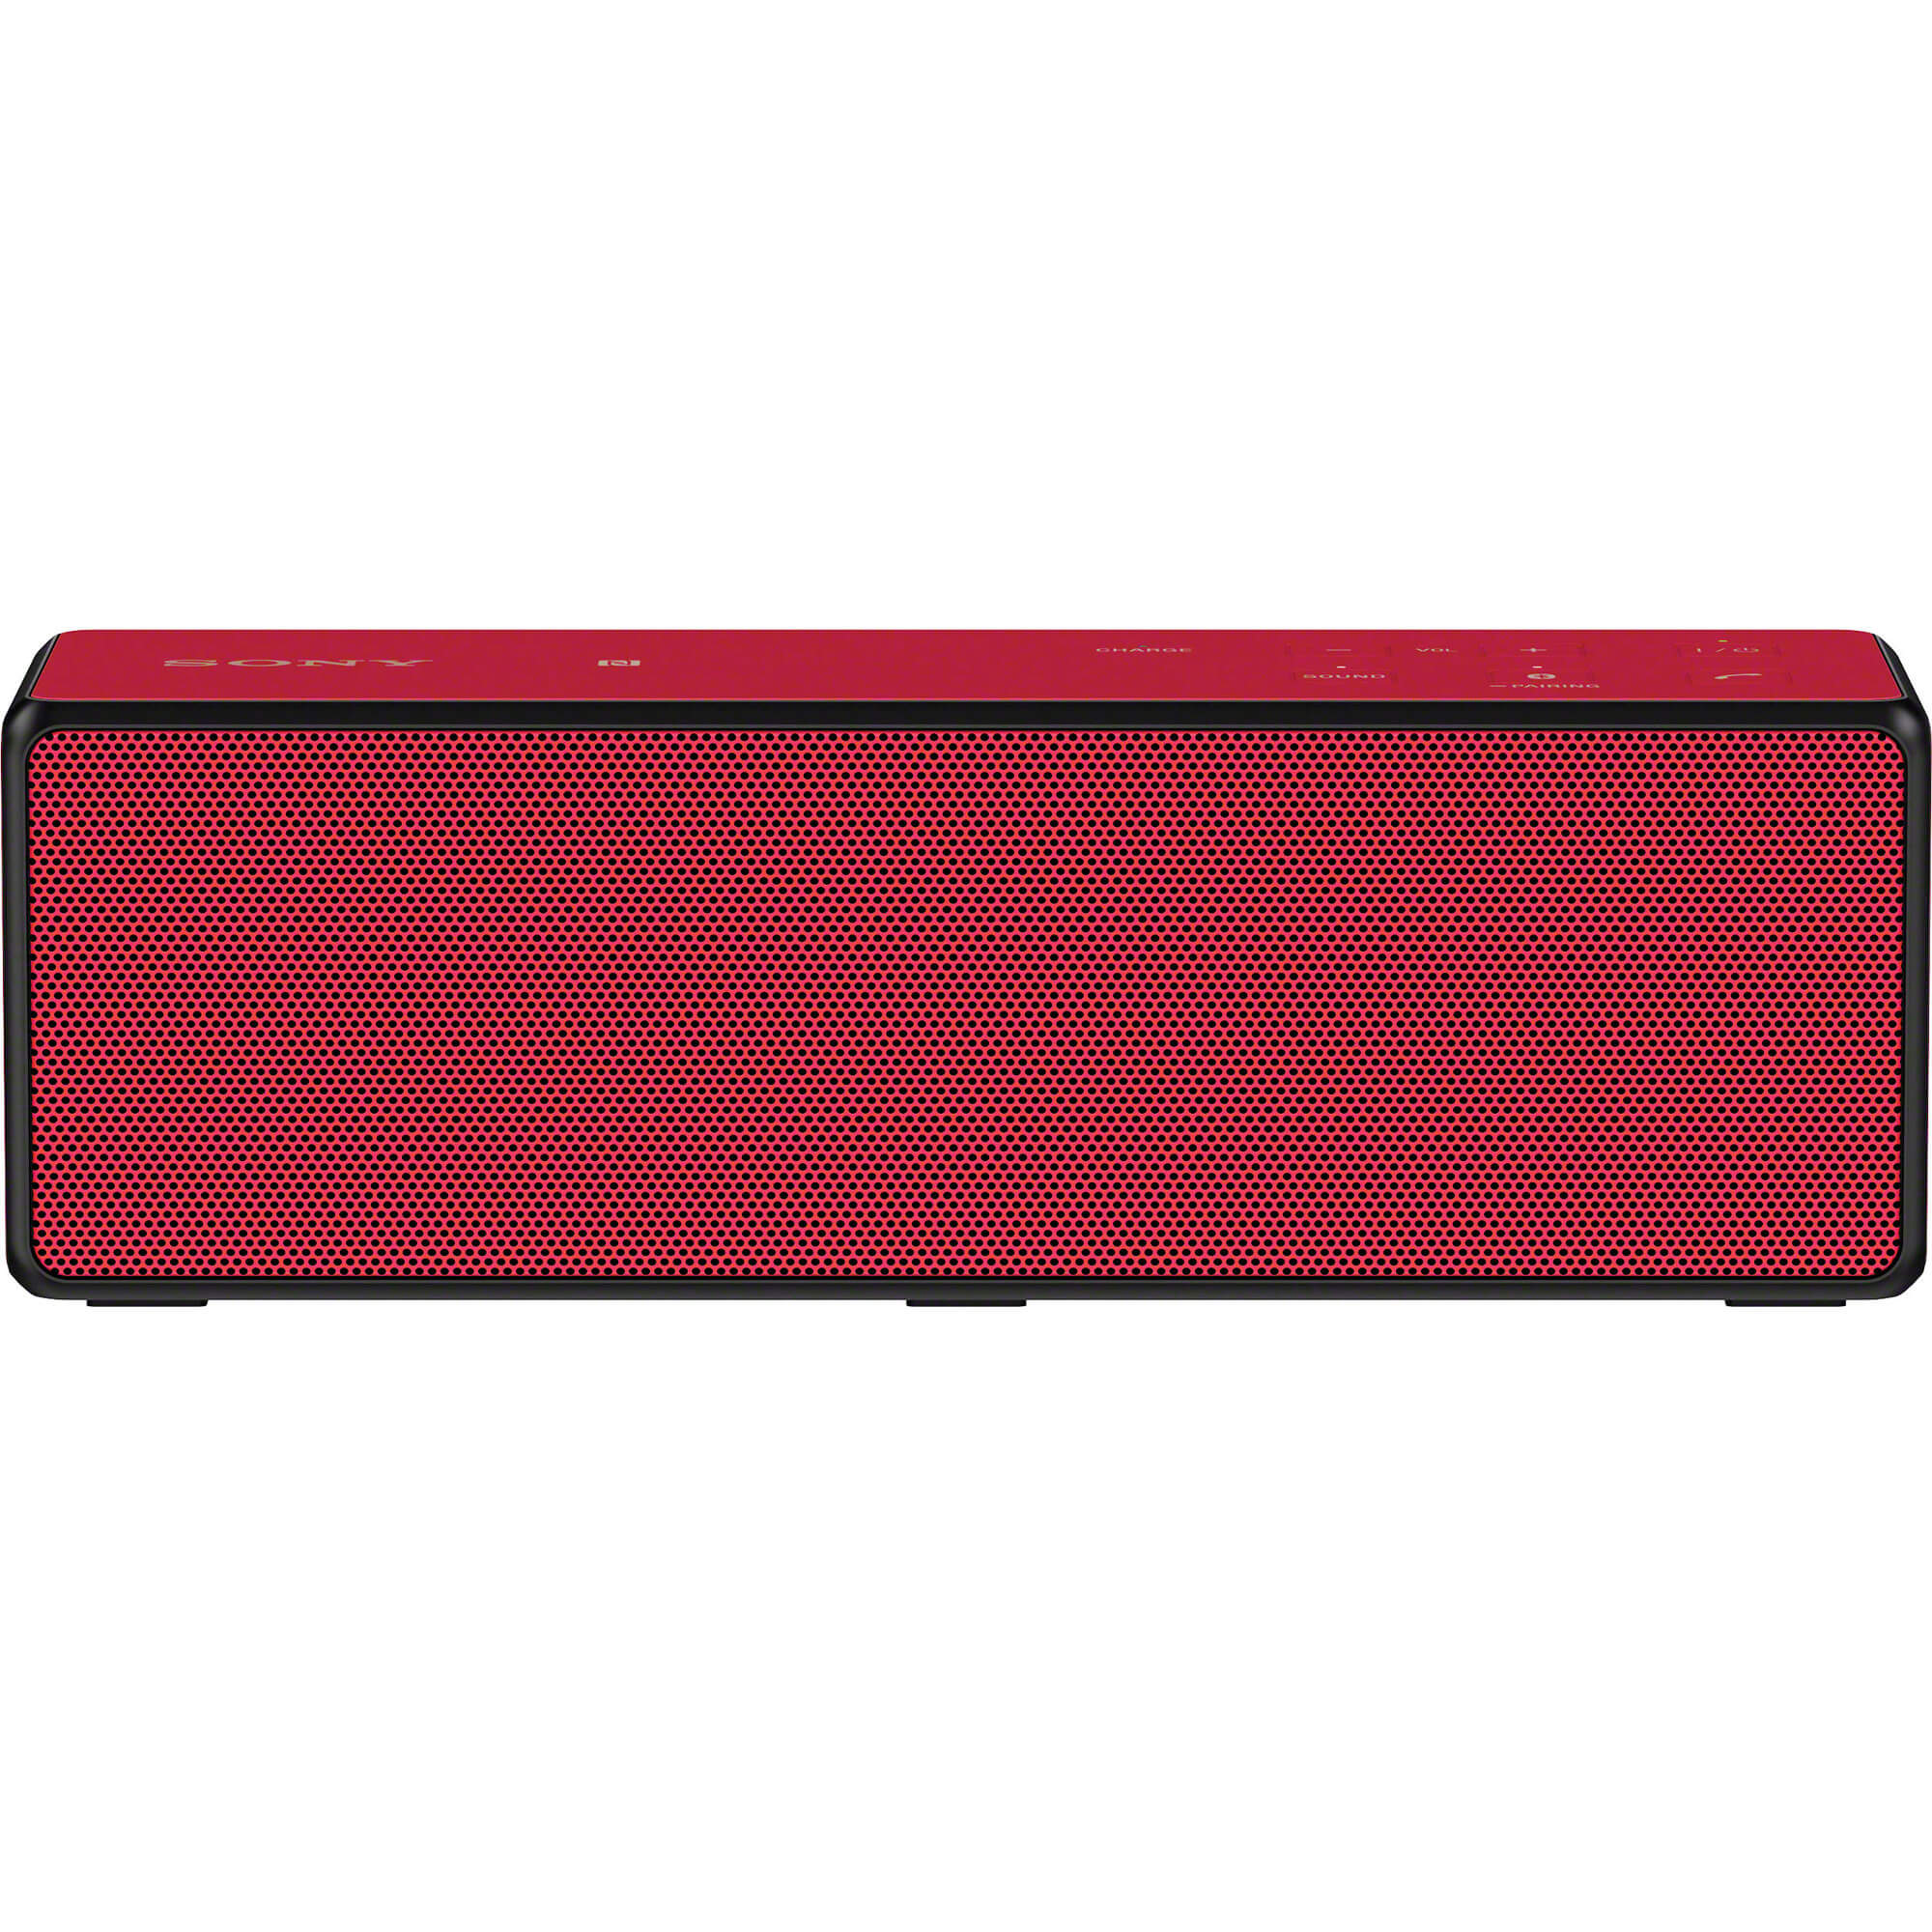  Boxa portabila Bluetooth Sony SRSX33R, Rosu 